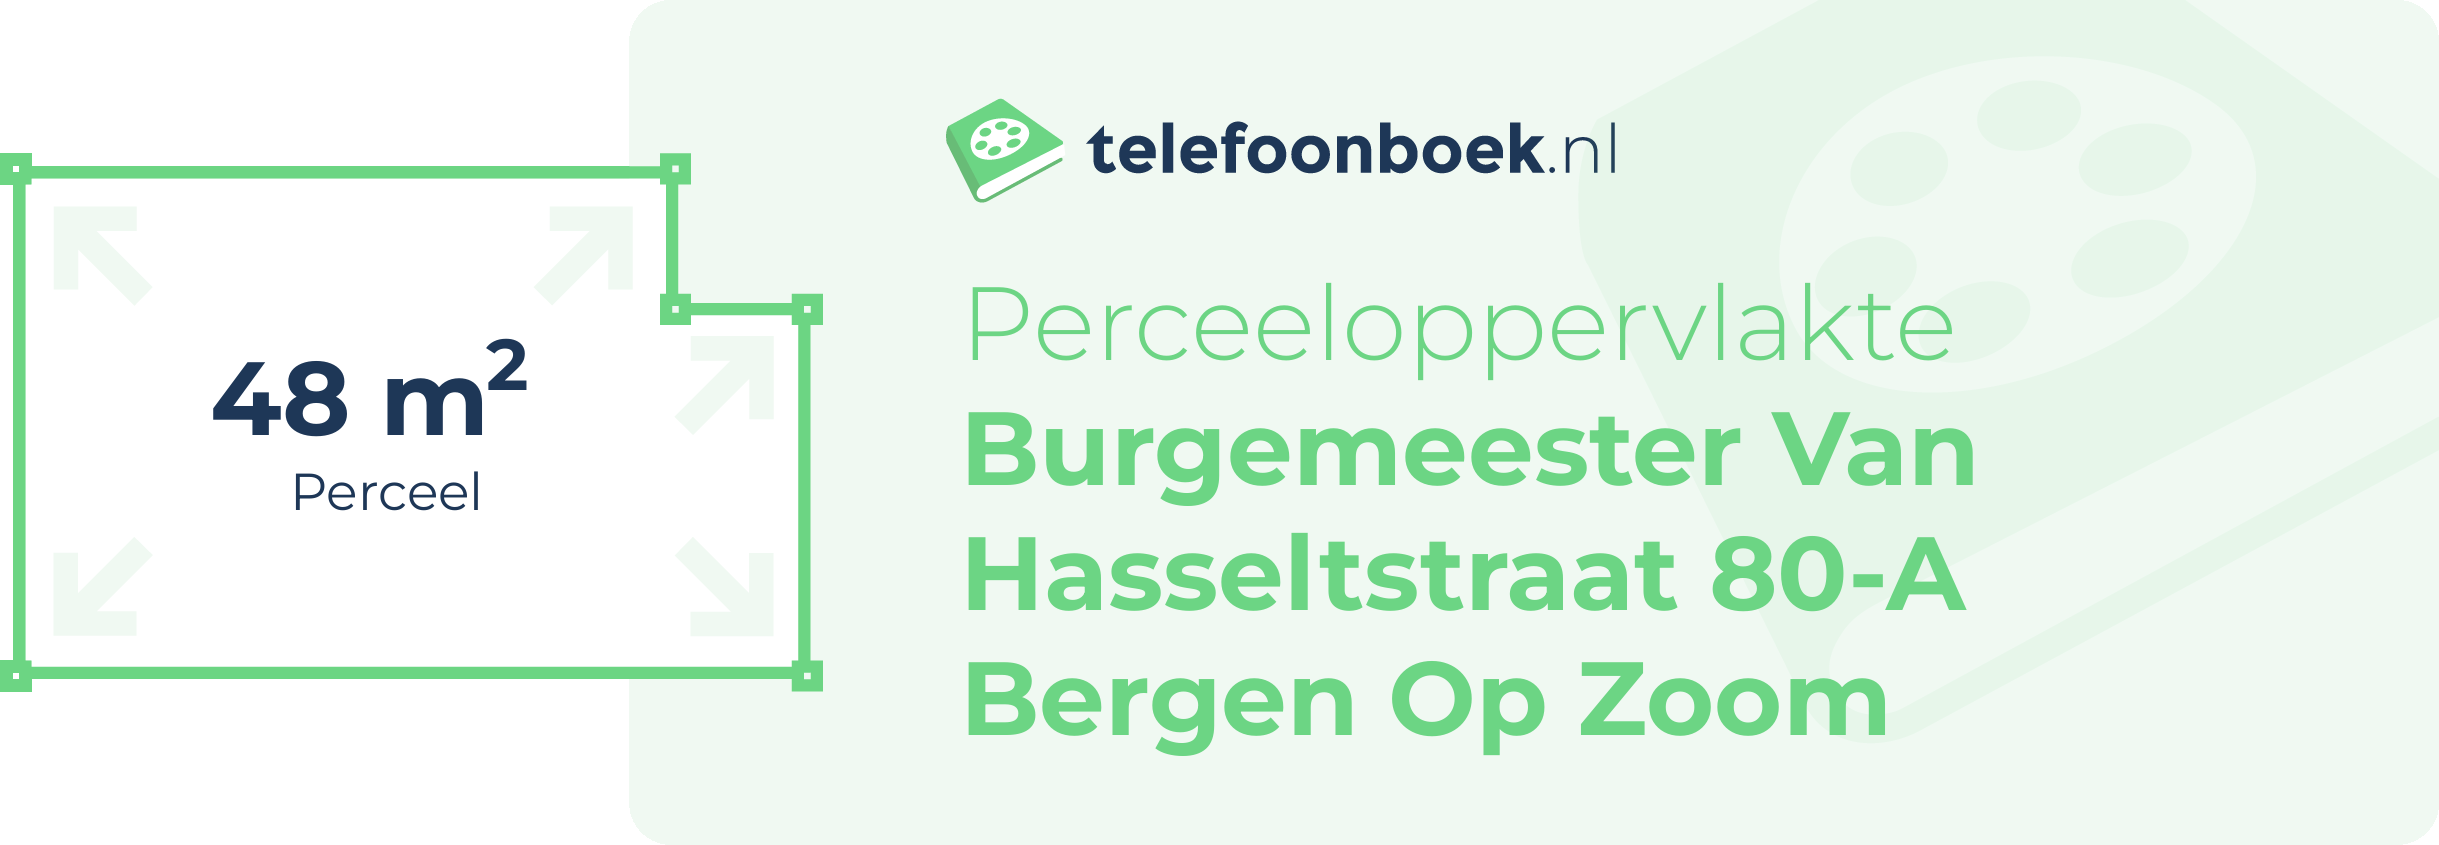 Perceeloppervlakte Burgemeester Van Hasseltstraat 80-A Bergen Op Zoom